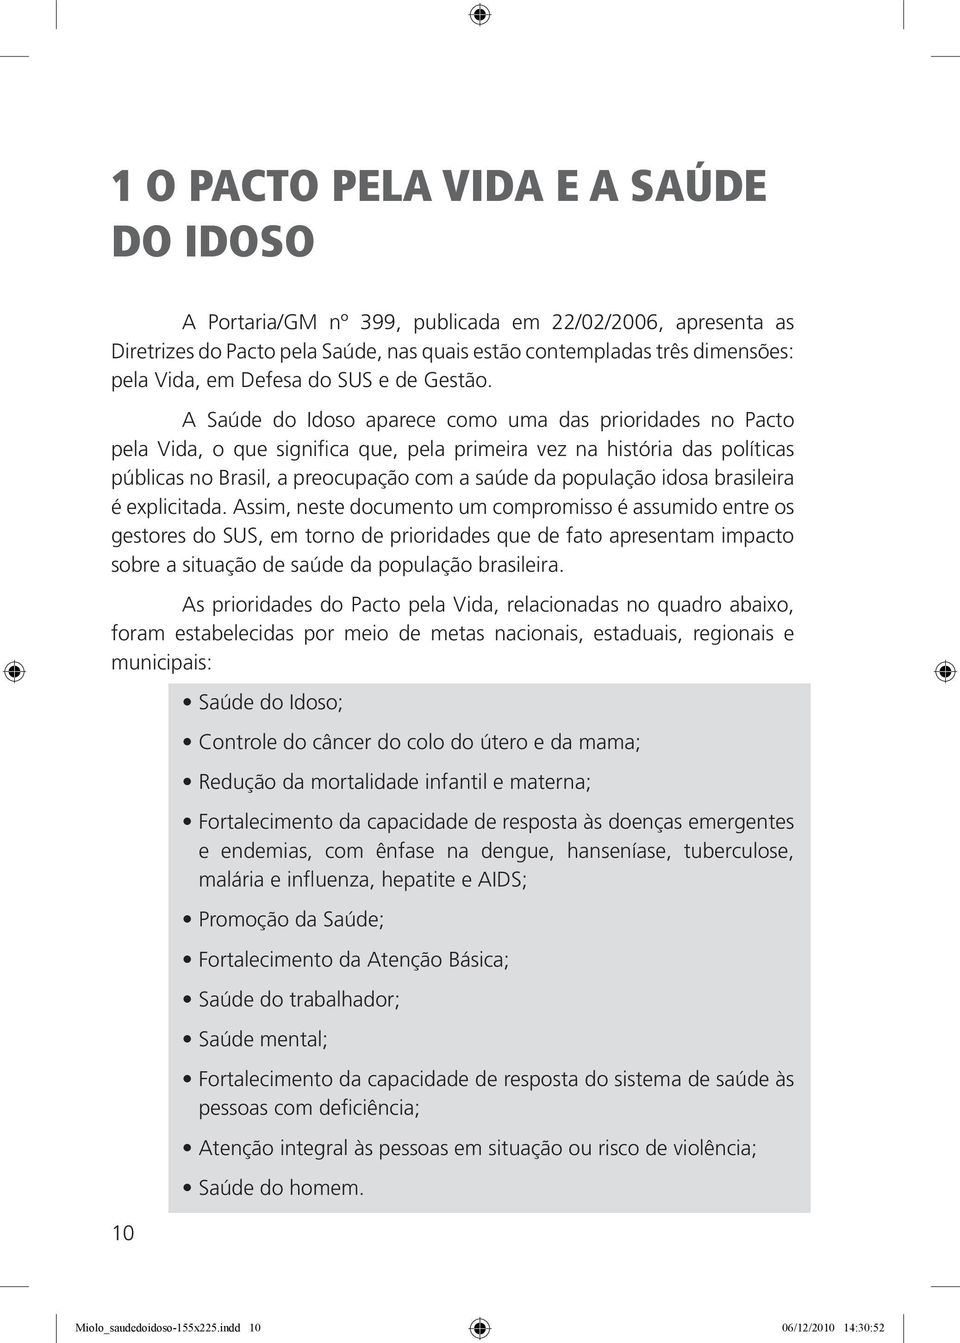 A Saúde do Idoso aparece como uma das prioridades no Pacto pela Vida, o que significa que, pela primeira vez na história das políticas públicas no Brasil, a preocupação com a saúde da população idosa